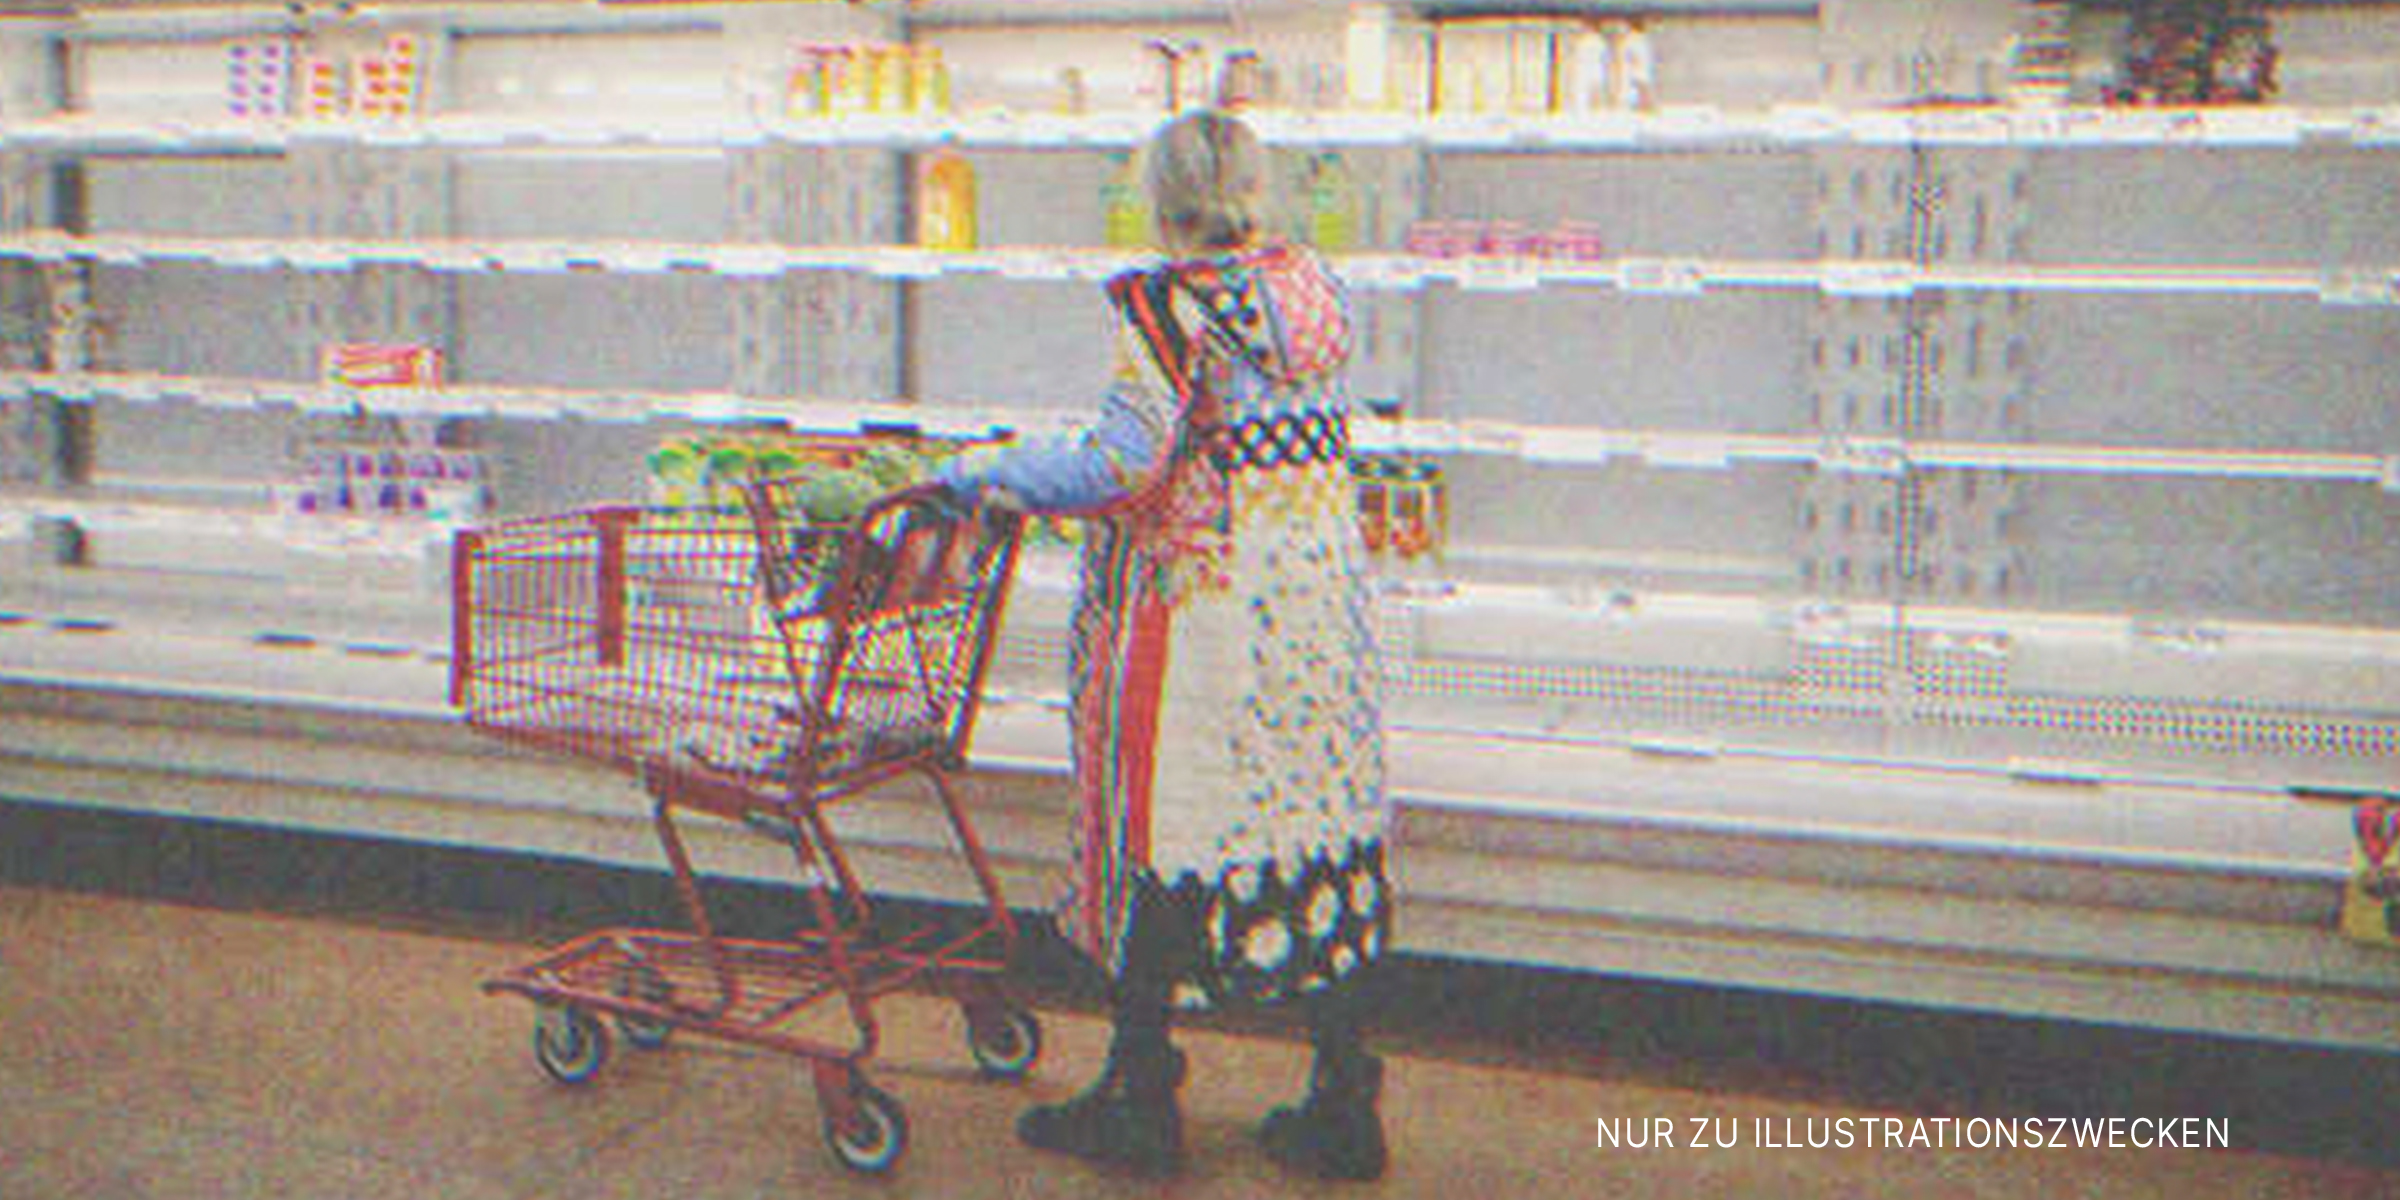 Alte Frau im Supermarkt | Quelle: Shutterstock